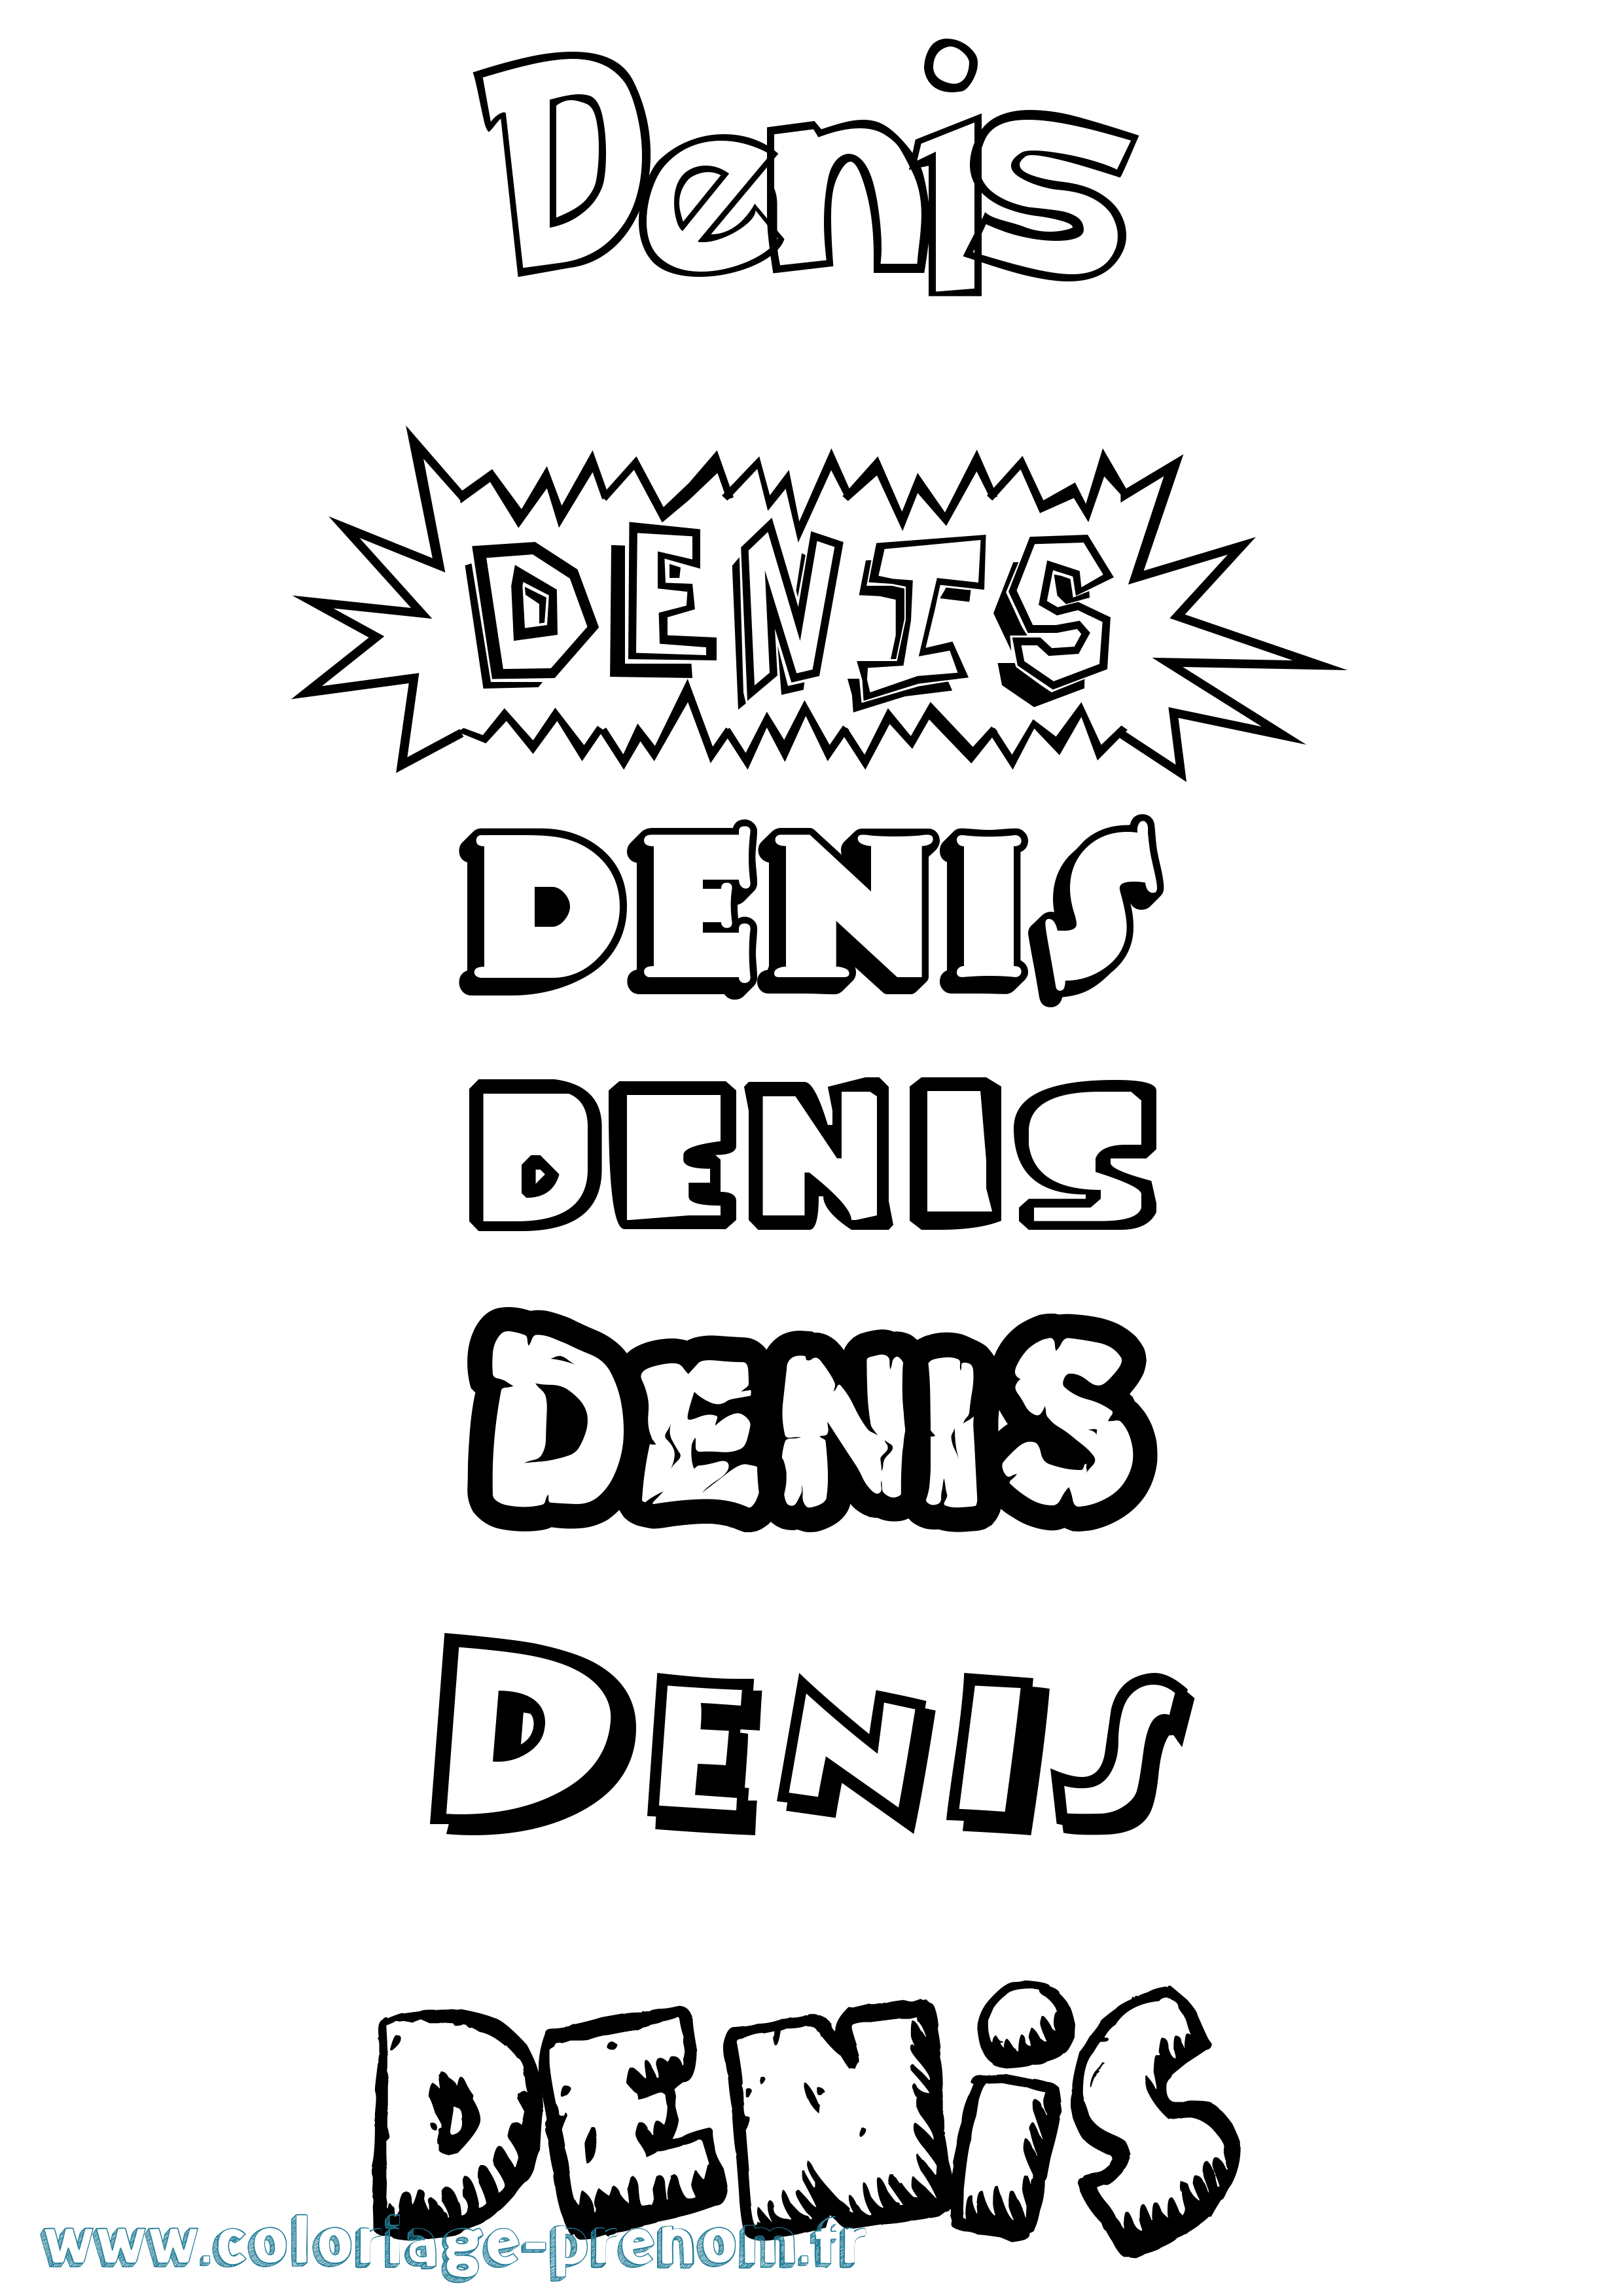 Coloriage prénom Denis